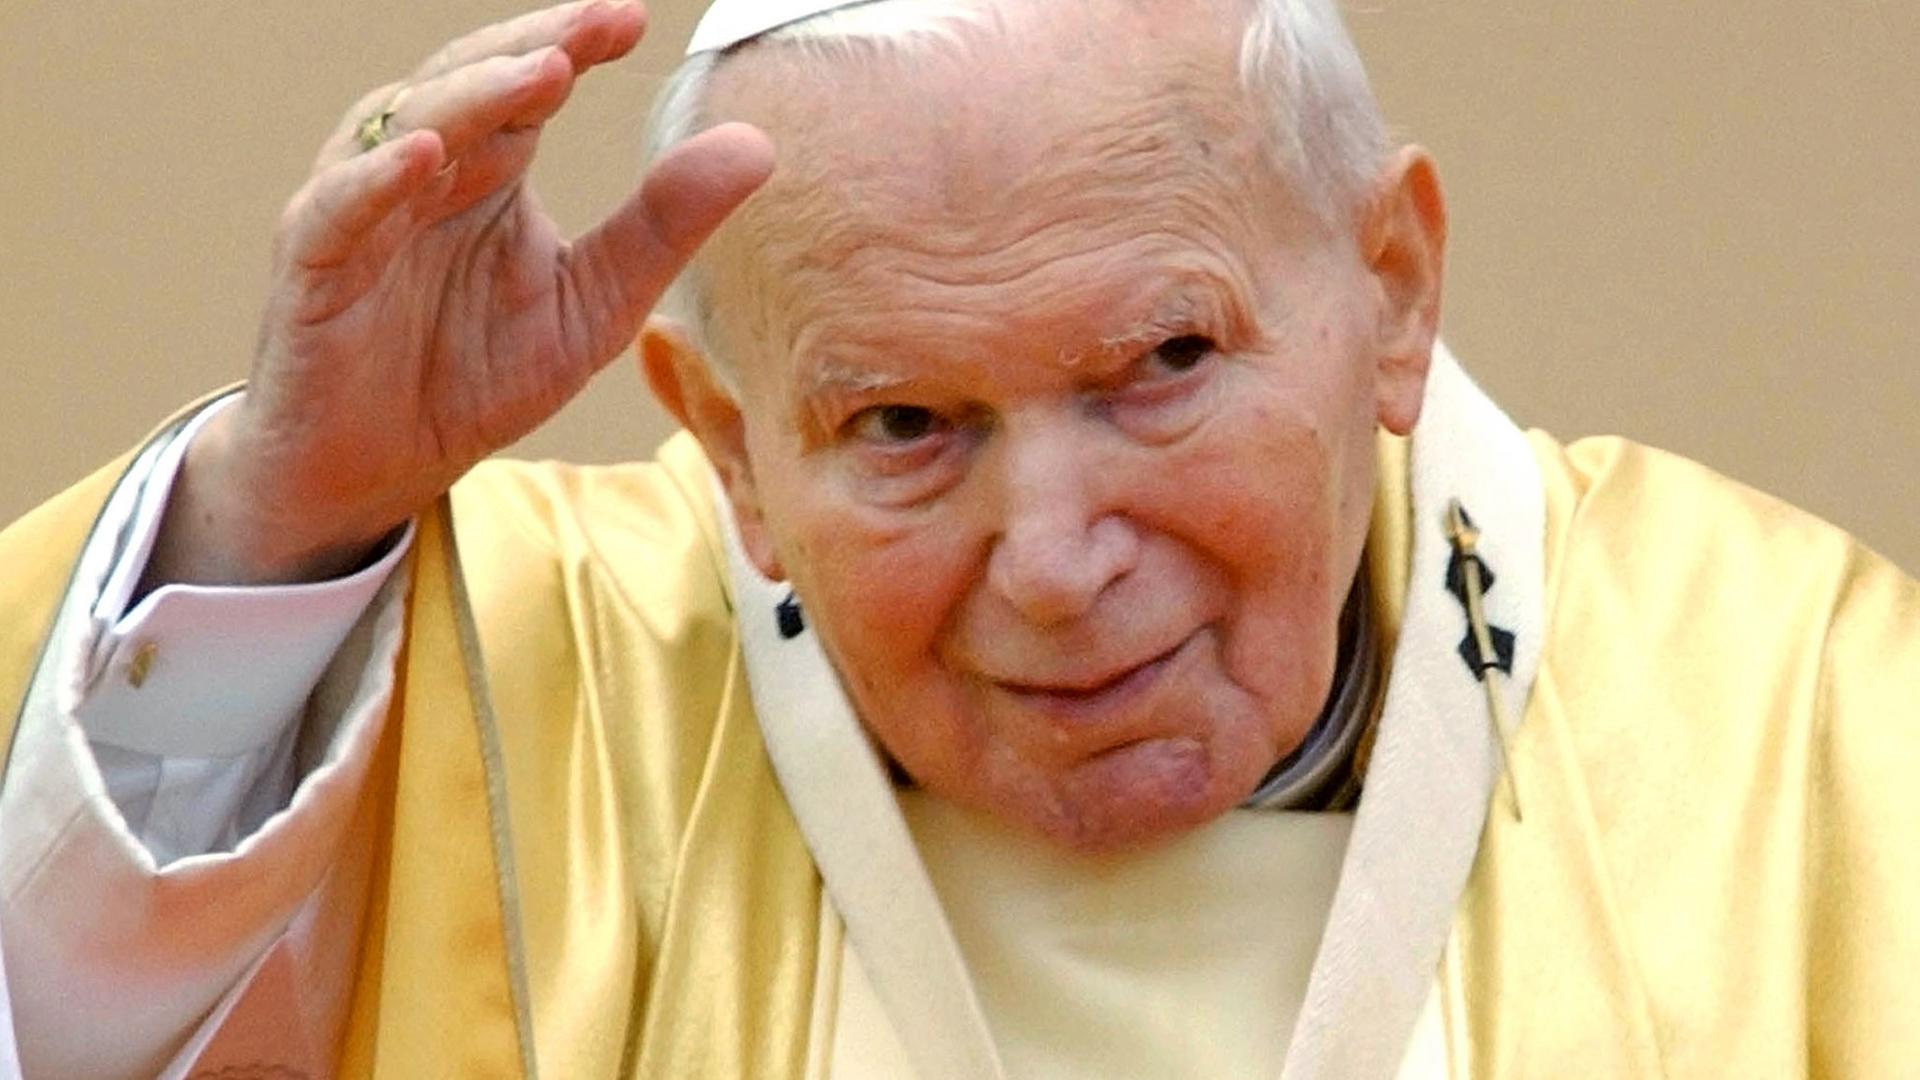 Archiv: Papst Johannes Paul II - 2002